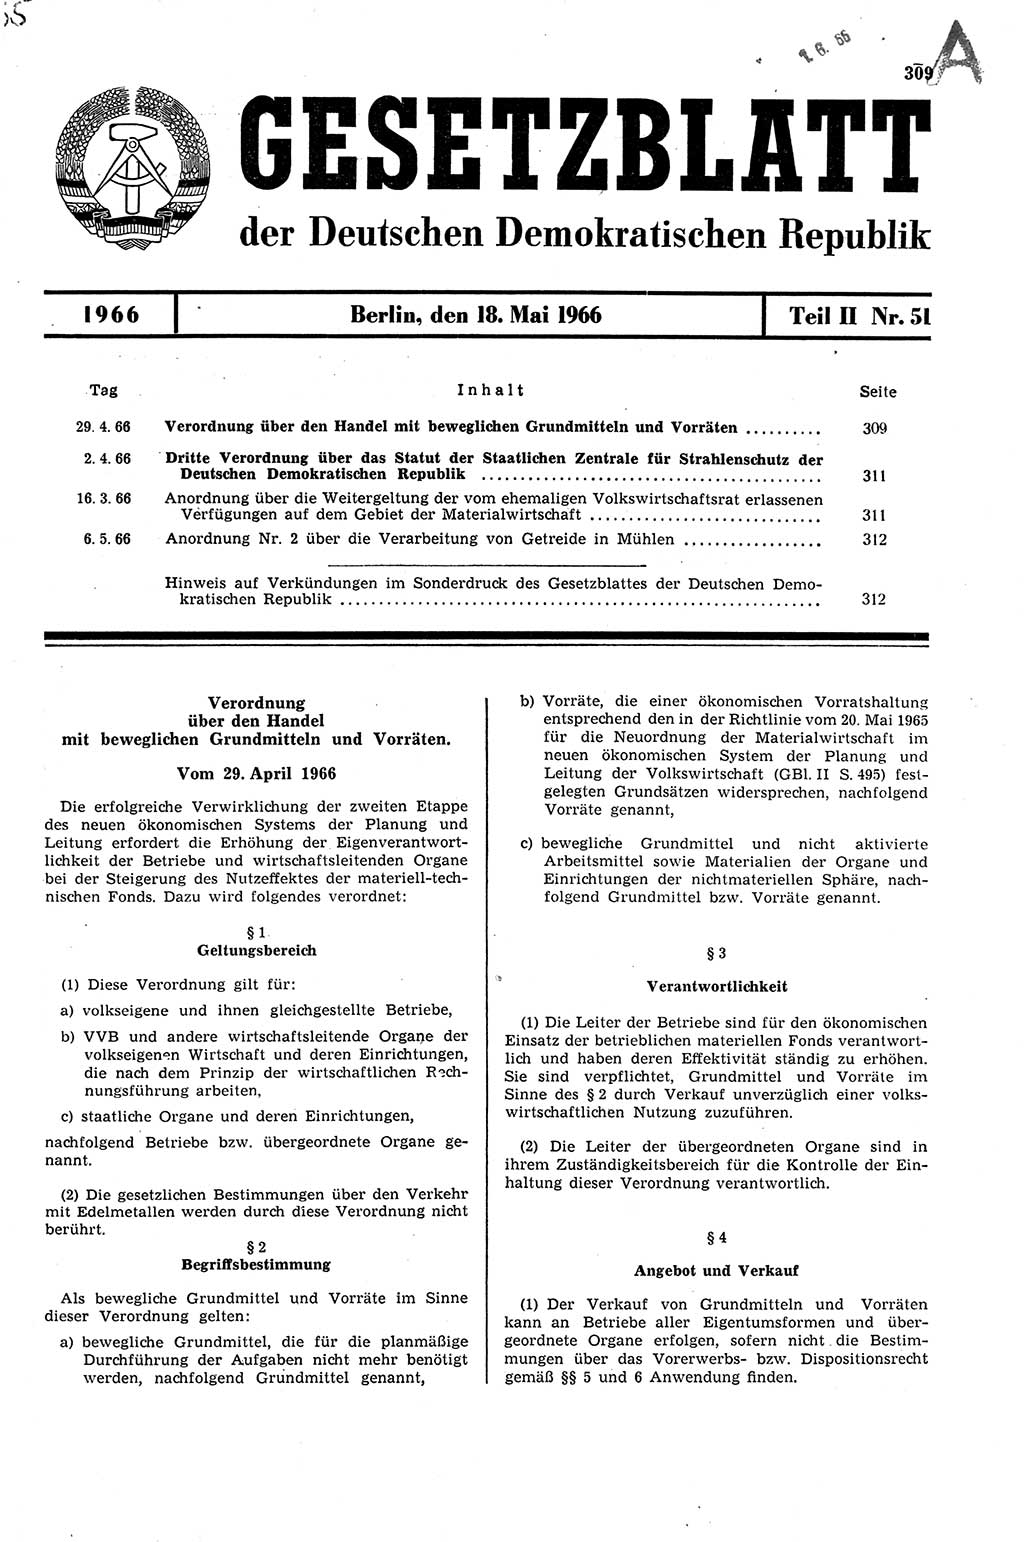 Gesetzblatt (GBl.) der Deutschen Demokratischen Republik (DDR) Teil ⅠⅠ 1966, Seite 309 (GBl. DDR ⅠⅠ 1966, S. 309)